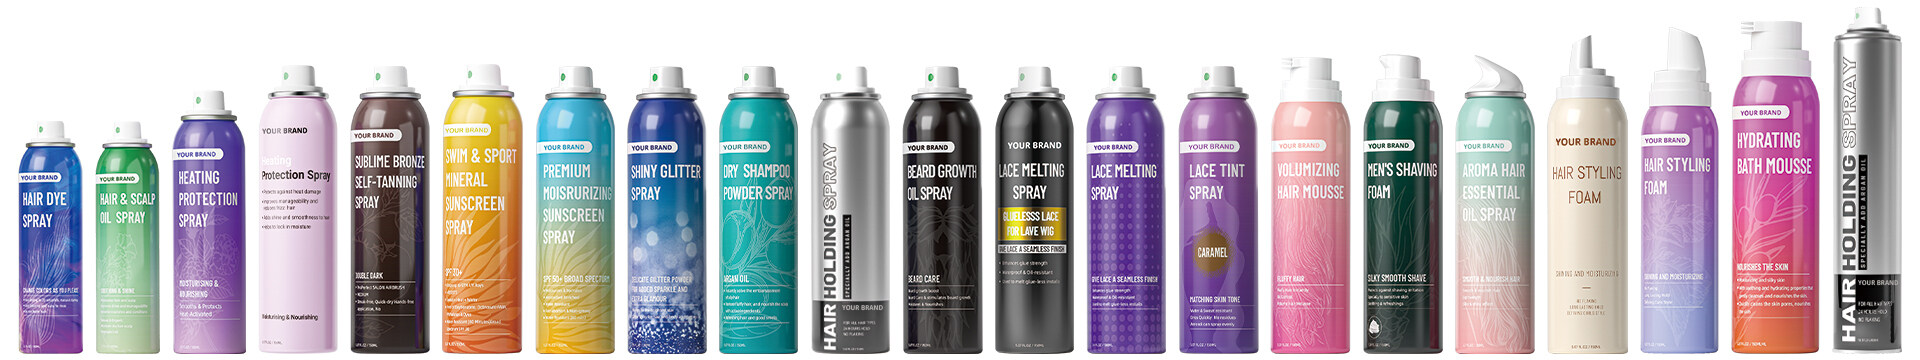 sea salt spray; hair spray ; hair styling ; hair styling spray